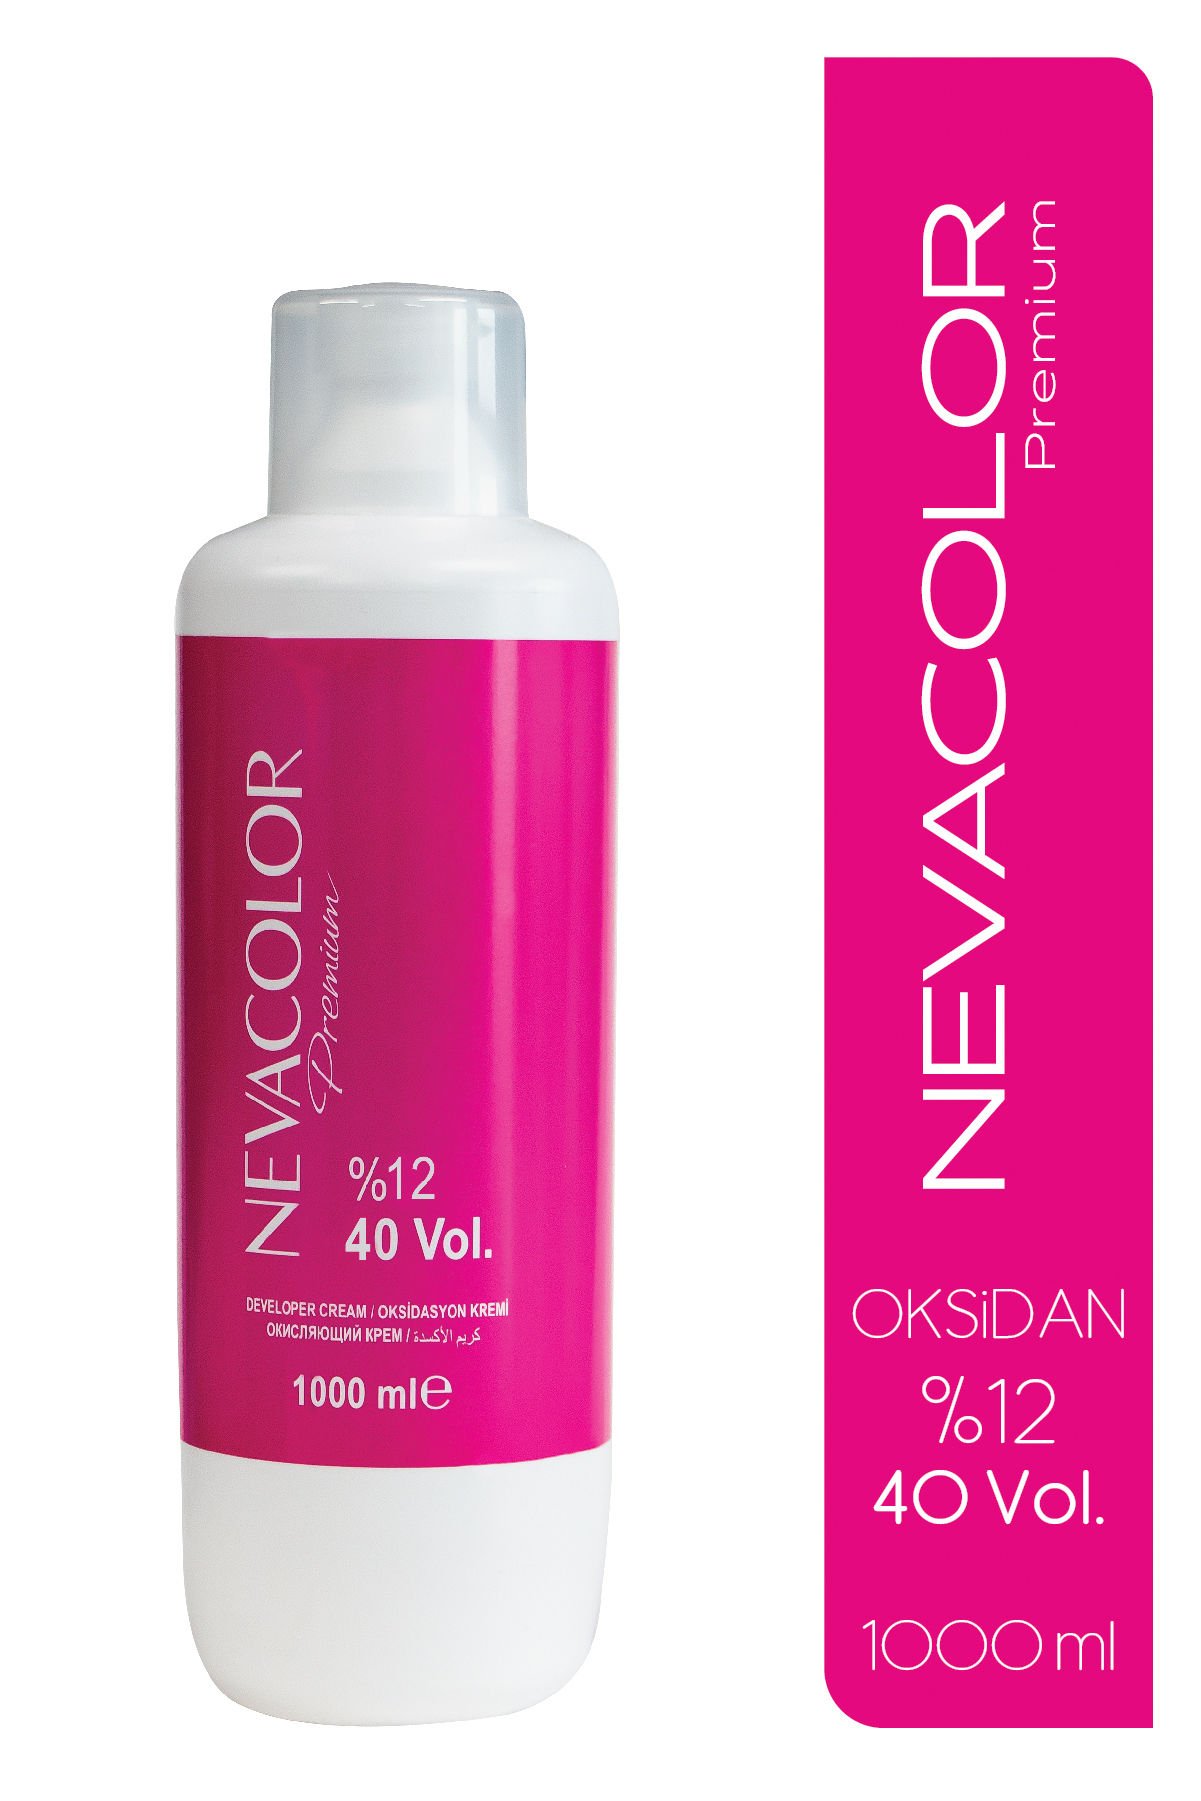 Nevacolor Oksidasyon Kremi 1000 ml - 40 Volüm %12